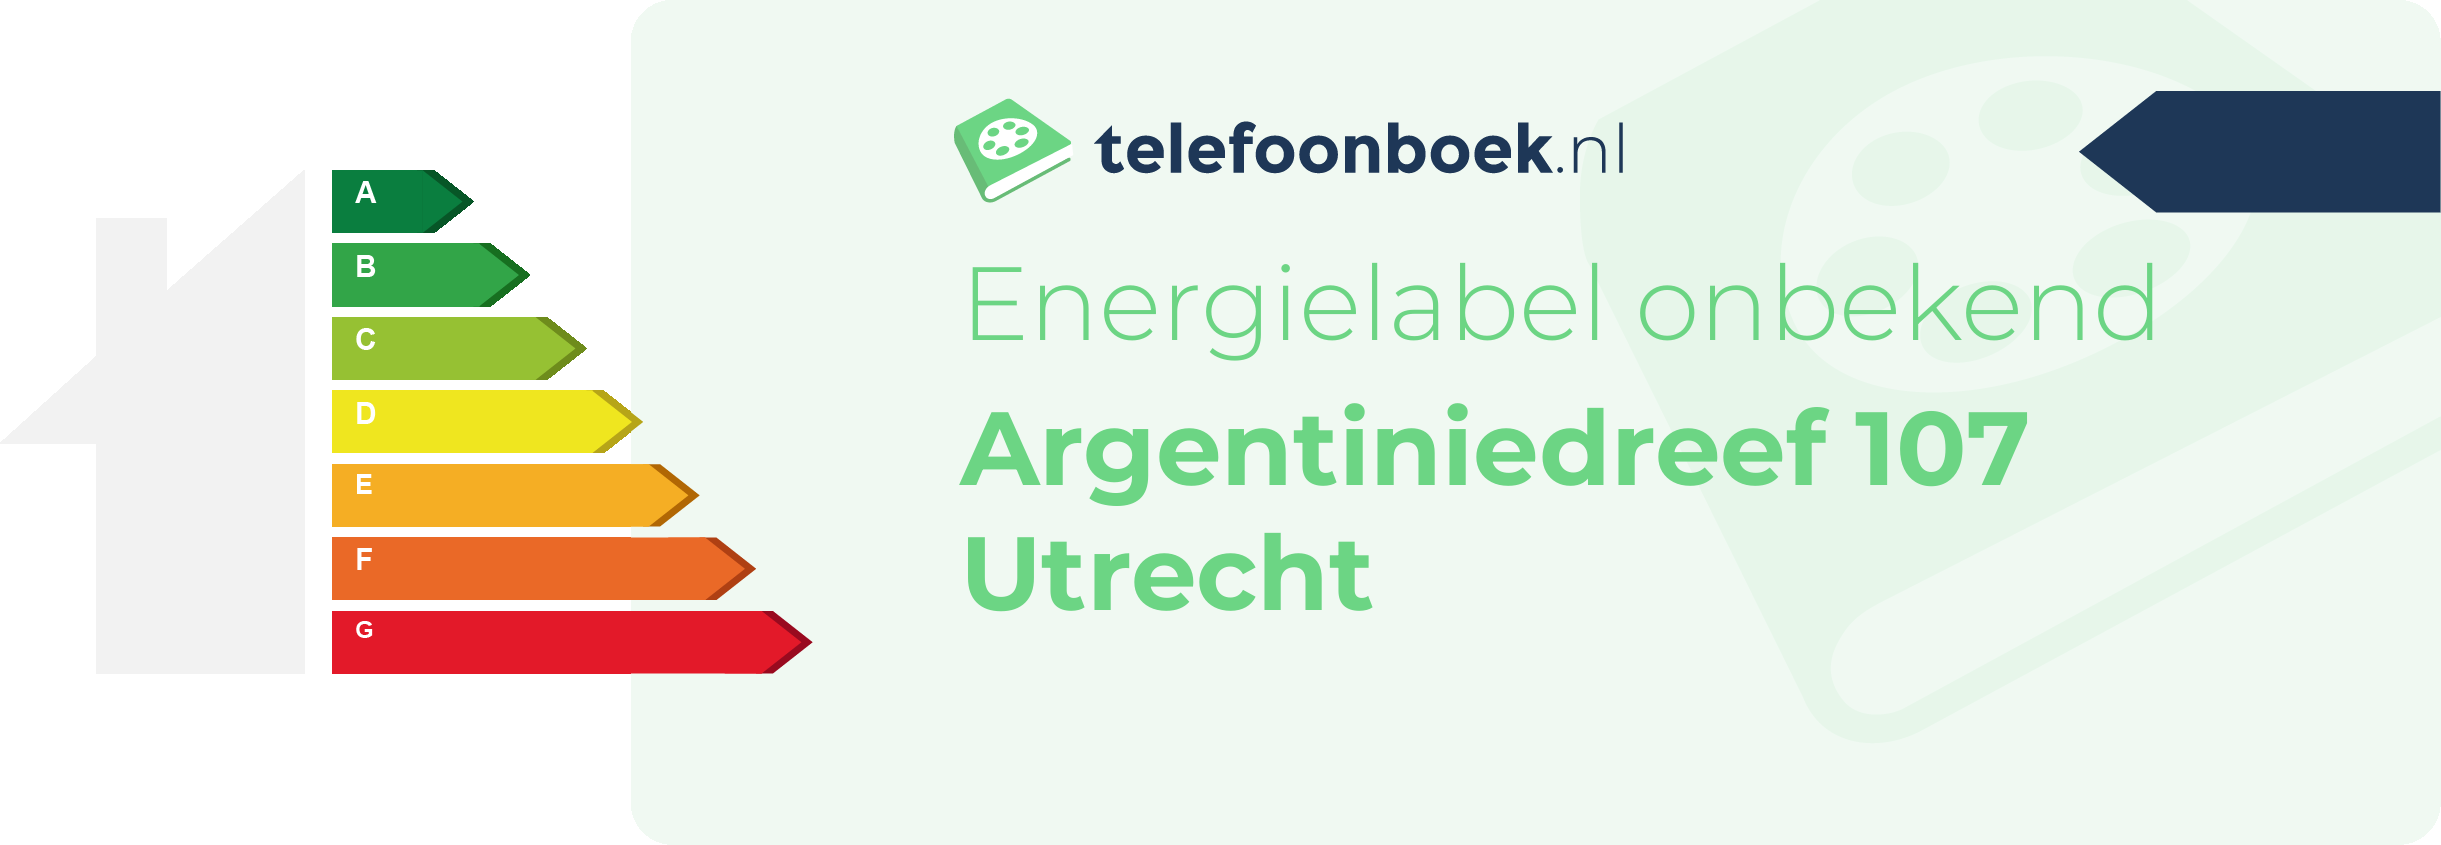 Energielabel Argentiniedreef 107 Utrecht